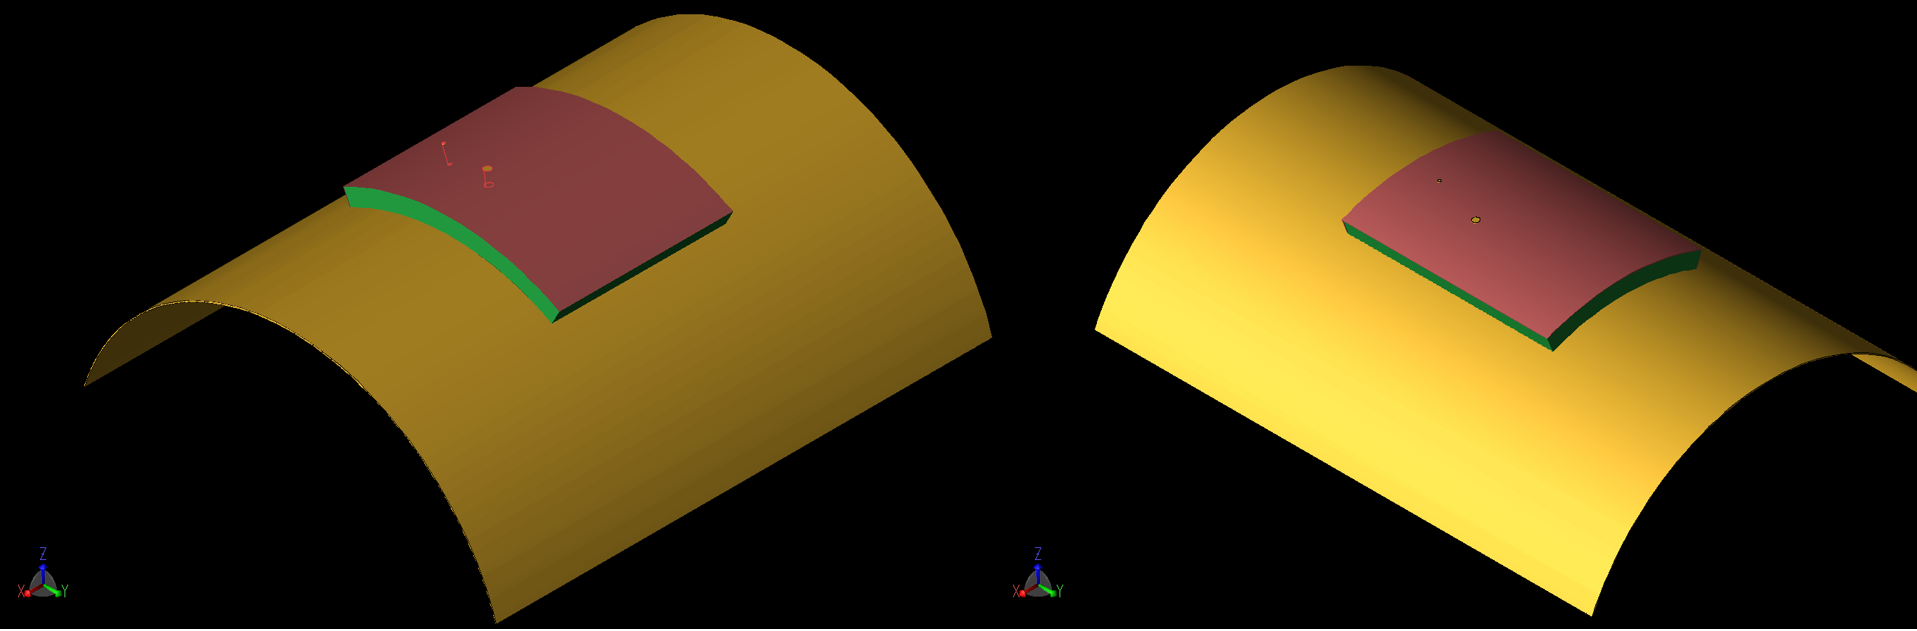 Figura 7: El parche se muestra en una configuración curva en la que el radio de curvatura es de 40 mm. A la izquierda (7a) la curvatura es alrededor del eje X mientras que a la derecha (7b) es alrededor del eje Y. Se simularon geometrías similares para una curvatura de 80 mm r...